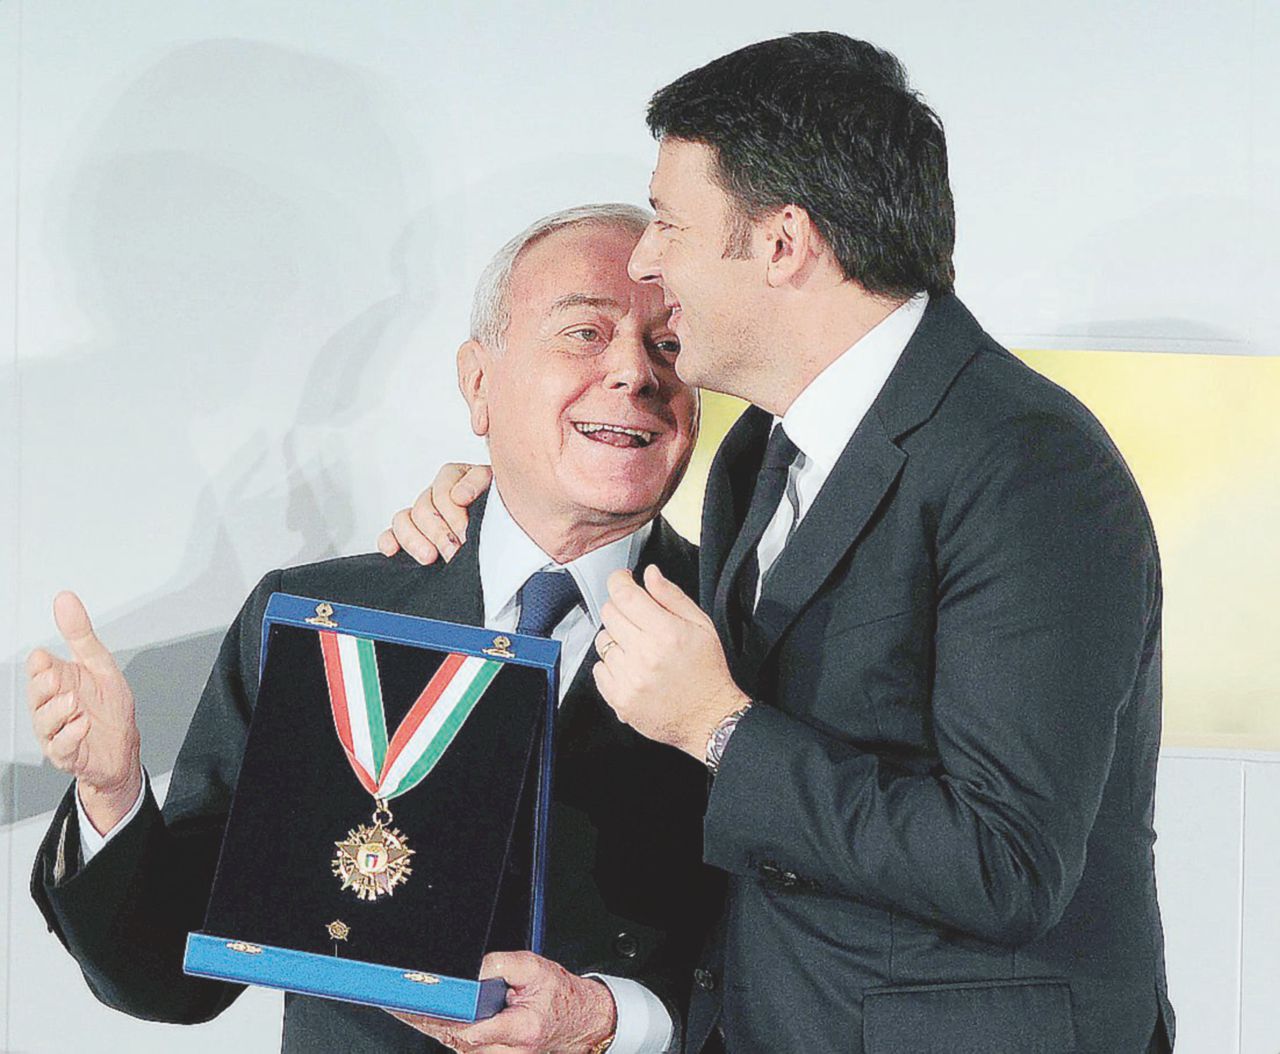 Sul Fatto del 4 agosto – Vertice clandestino Renzi-Gianni Letta su voto e Mediaset